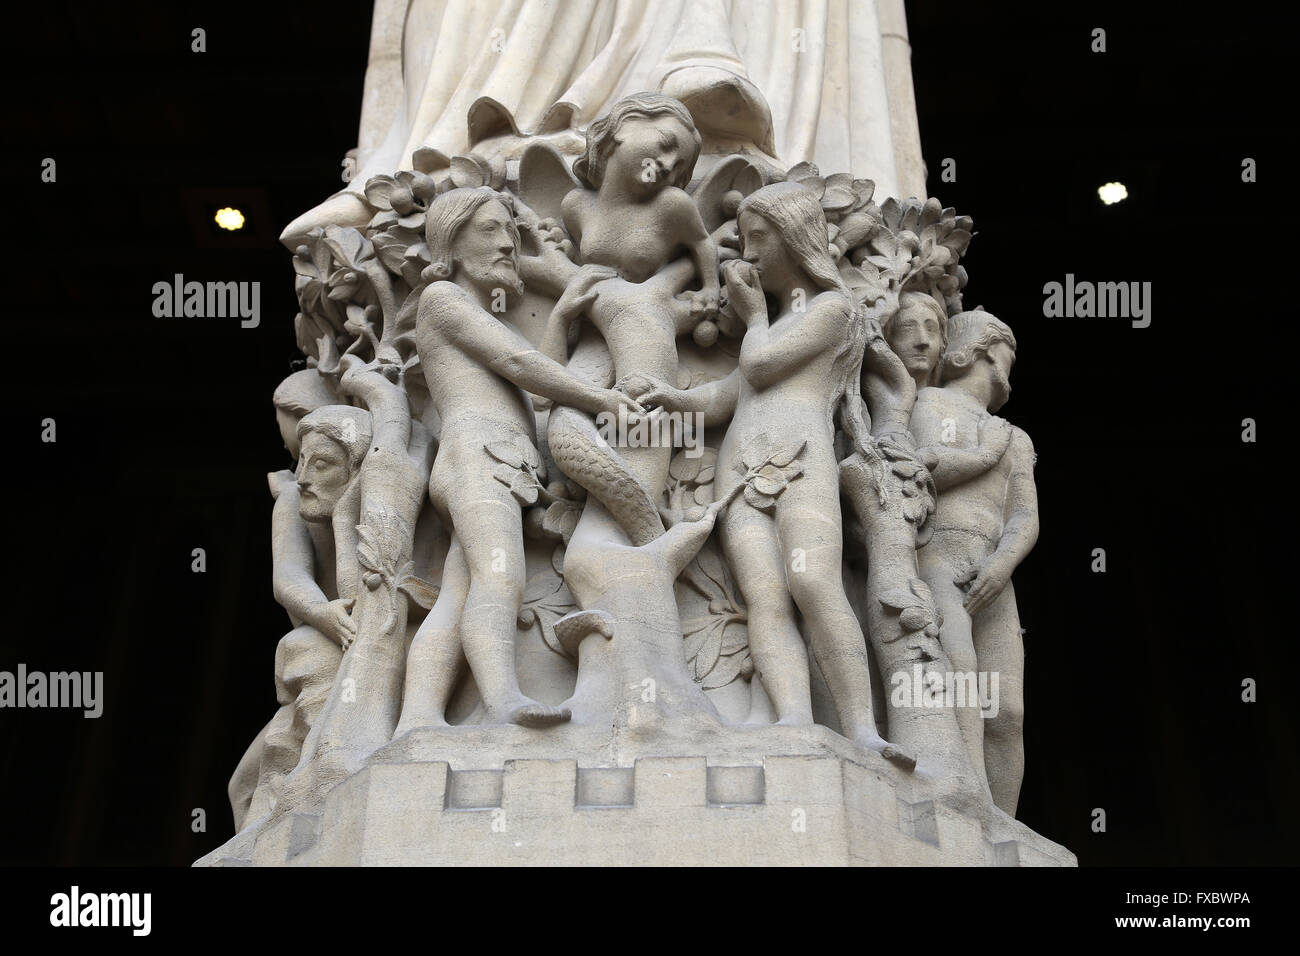 Adam, Eve et le Serpent. Notre Dame. Paris, France. Façade ouest. Reconstruite par Viollet-Duc statues, xixe s. Banque D'Images